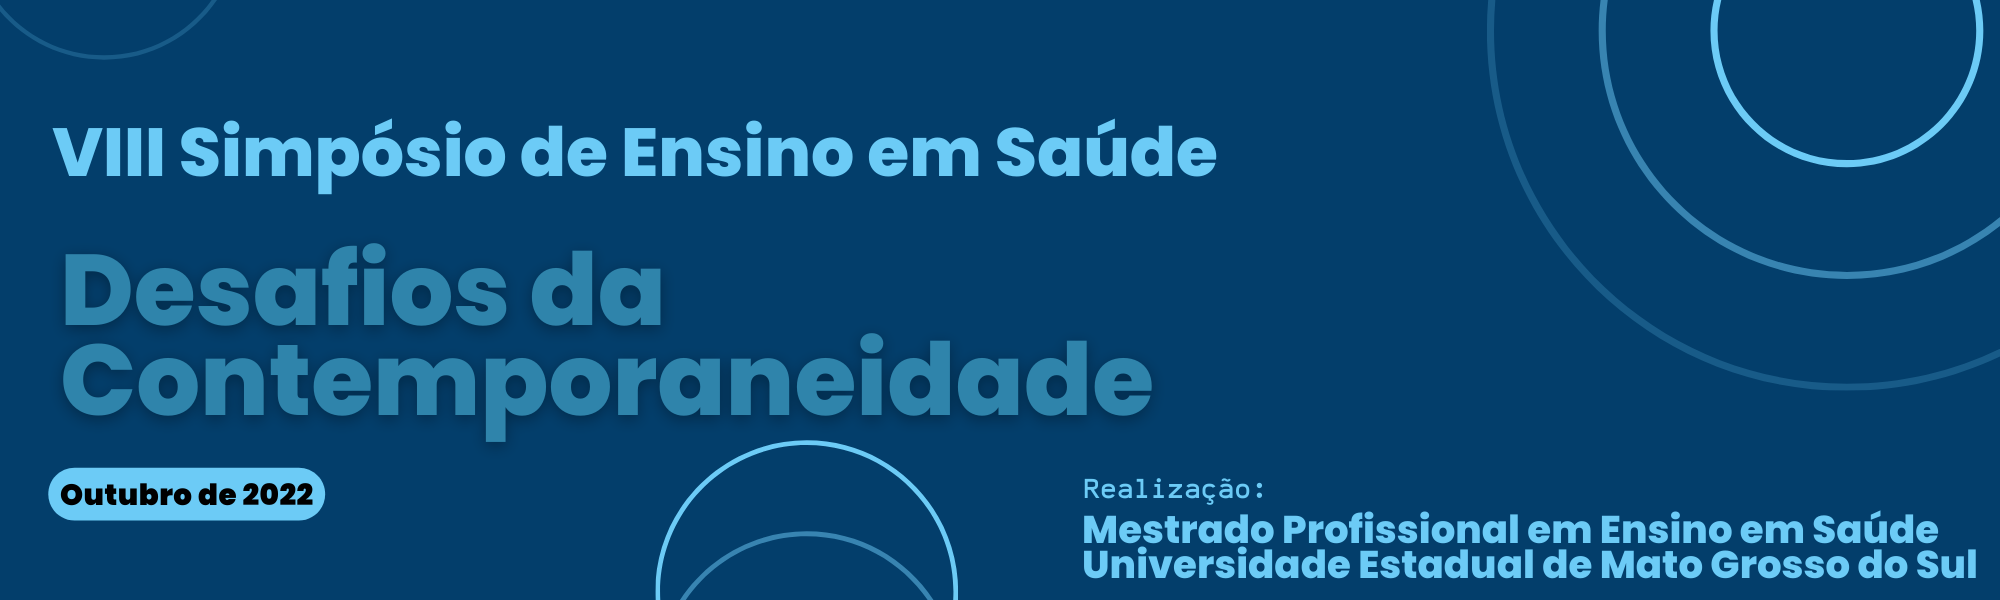 VIII Simpósio de Ensino em Saúde (SIES). Ocorrerá nos dias 26 a 28 de outubro de 2022 na Unidade Universitária de Dourados da Universidade Estadual de Mato Grosso do Sul.